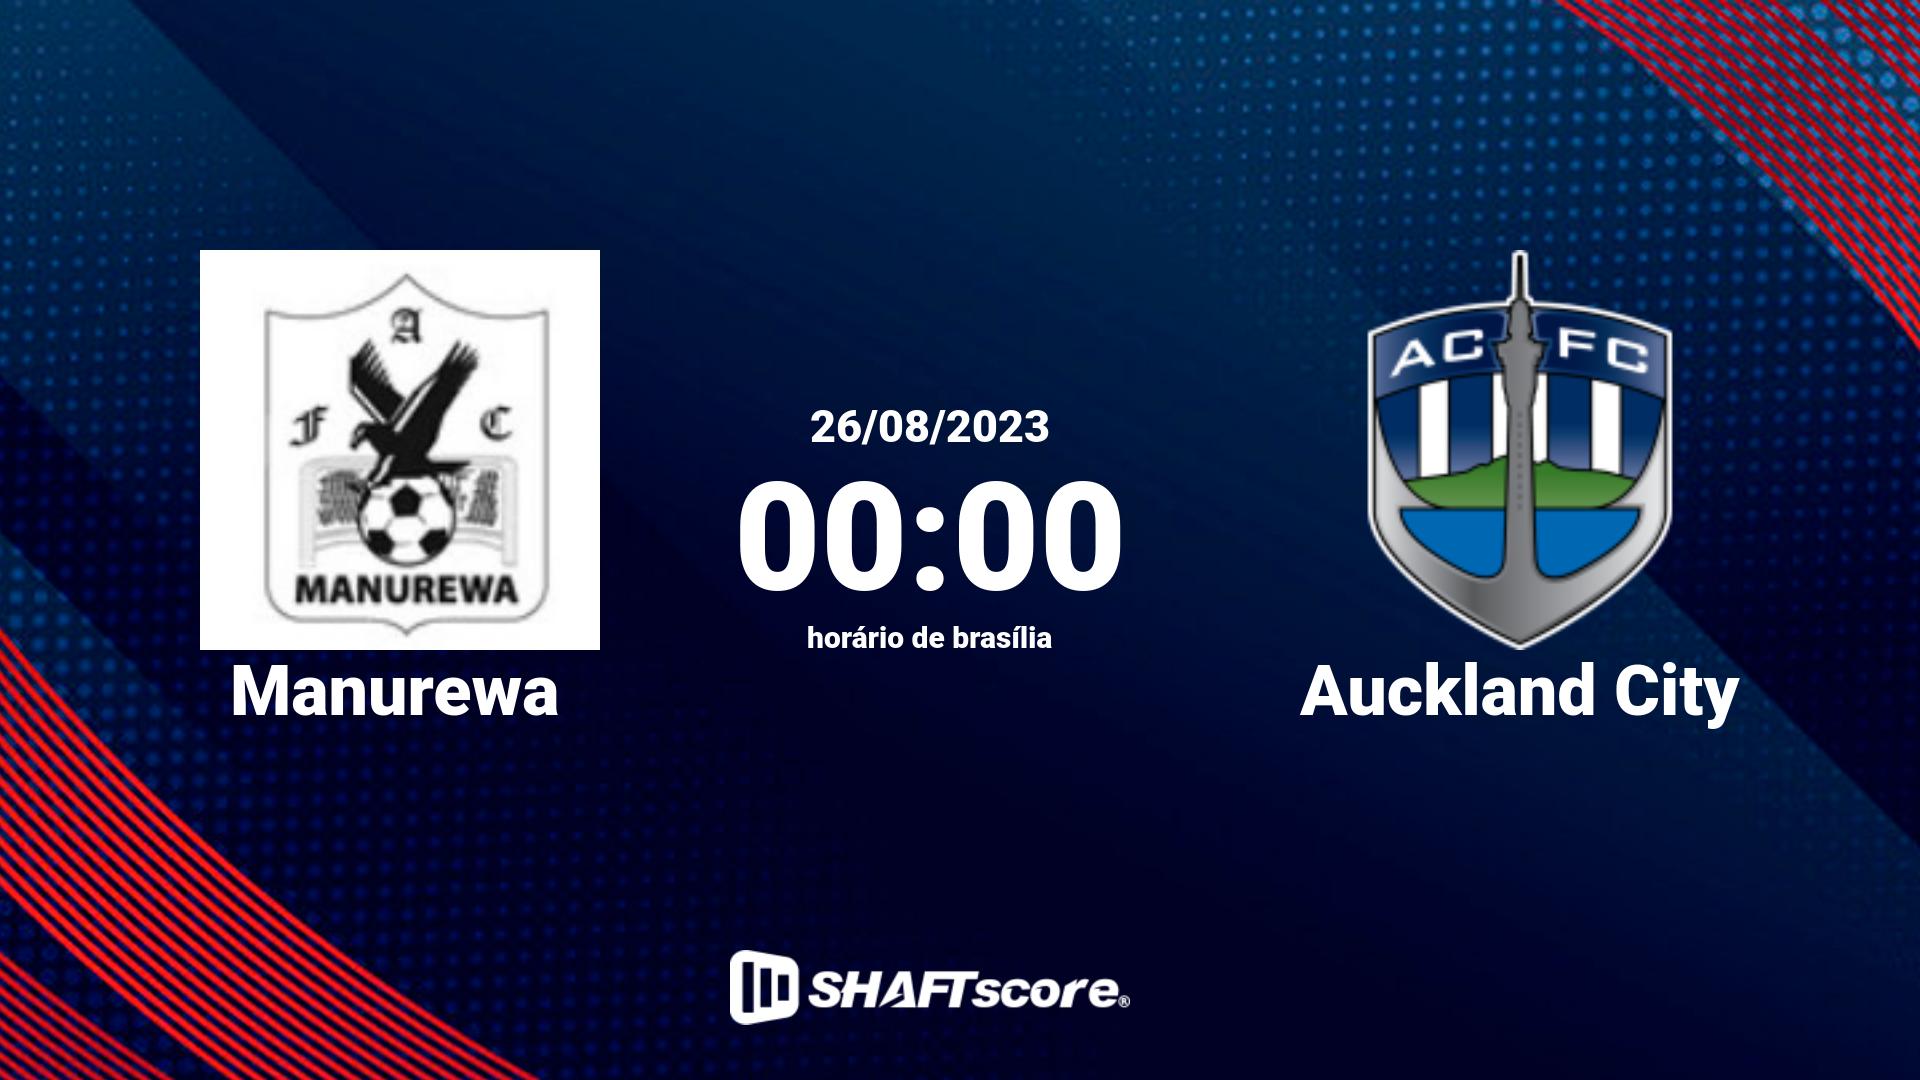 Estatísticas do jogo Manurewa vs Auckland City 26.08 00:00